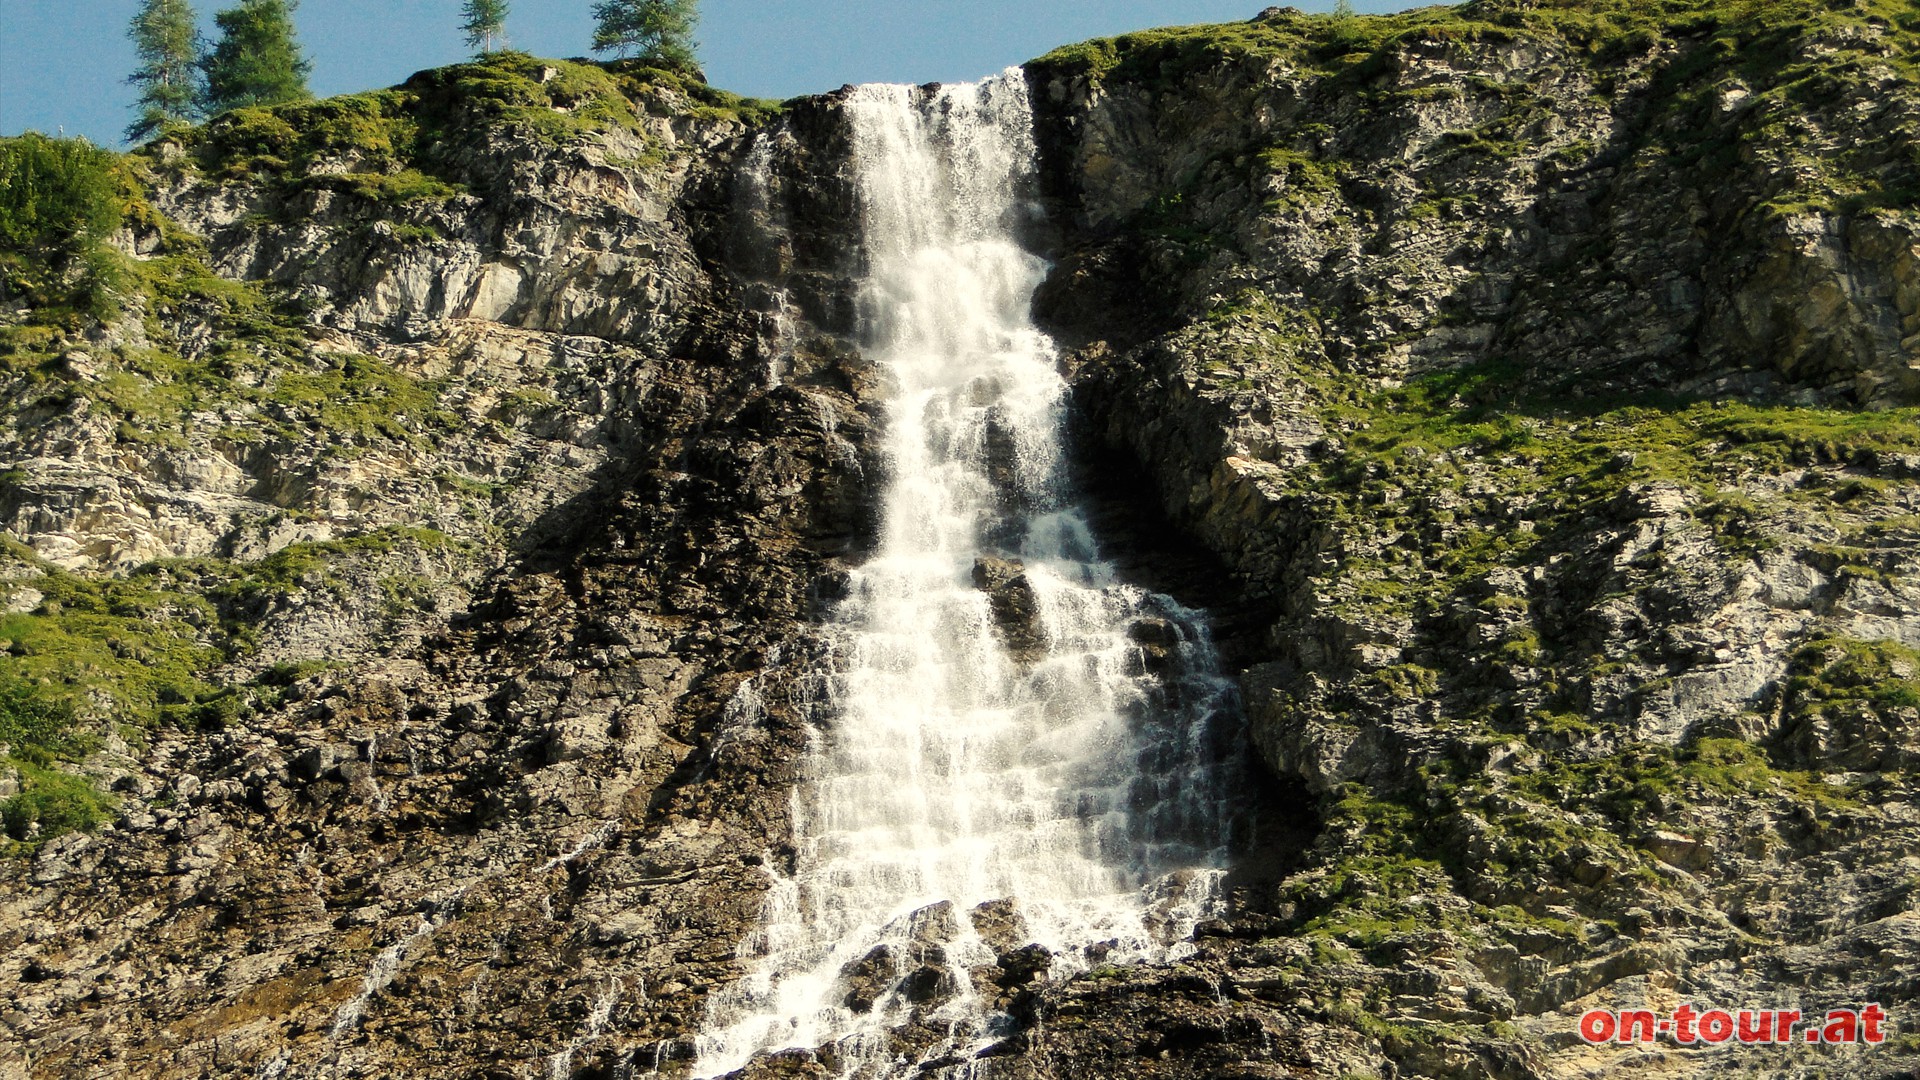 Der mchtige Wasserfall beeindruckt.